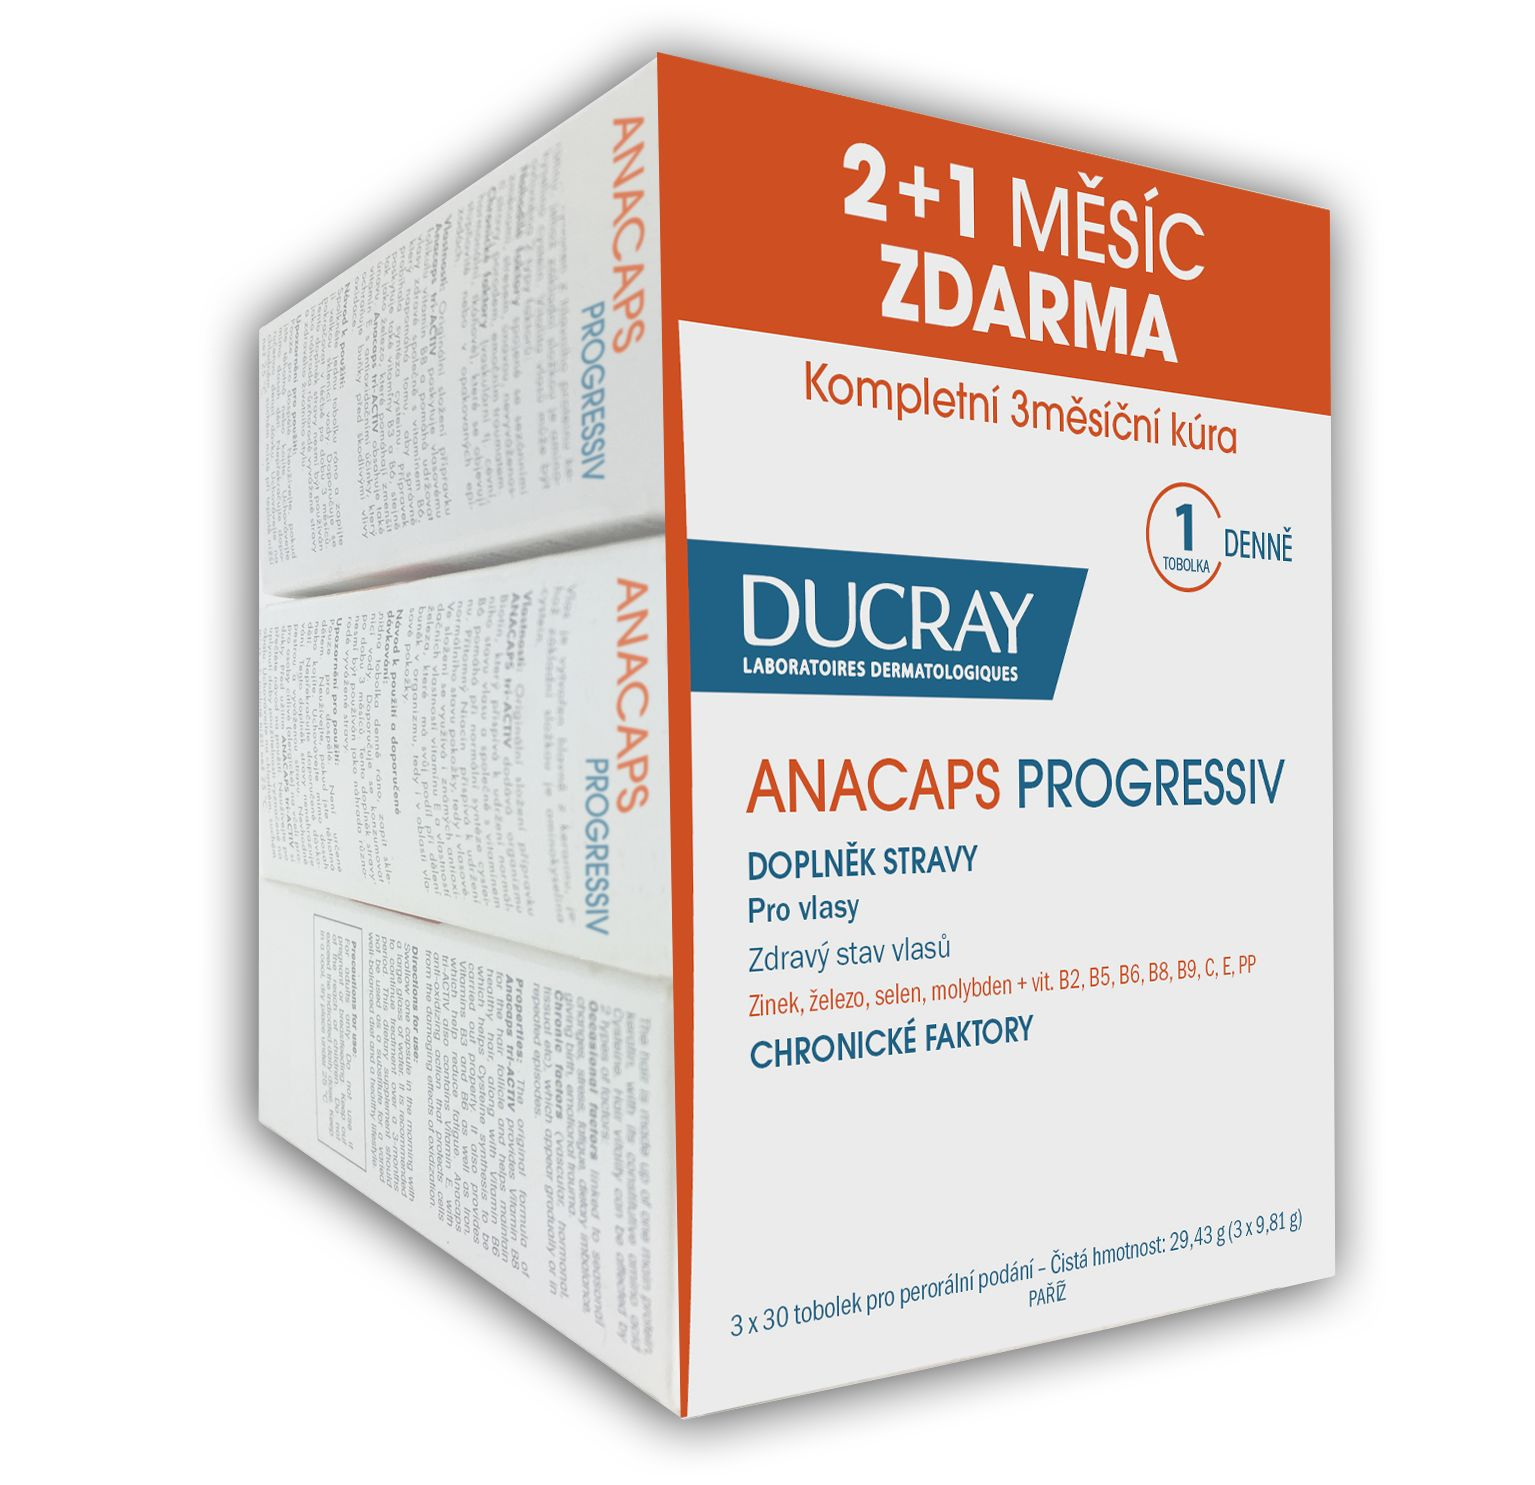 Ducray Anacaps Progressiv 30 tobolek TRIO (2+1 zdarma) Ducray